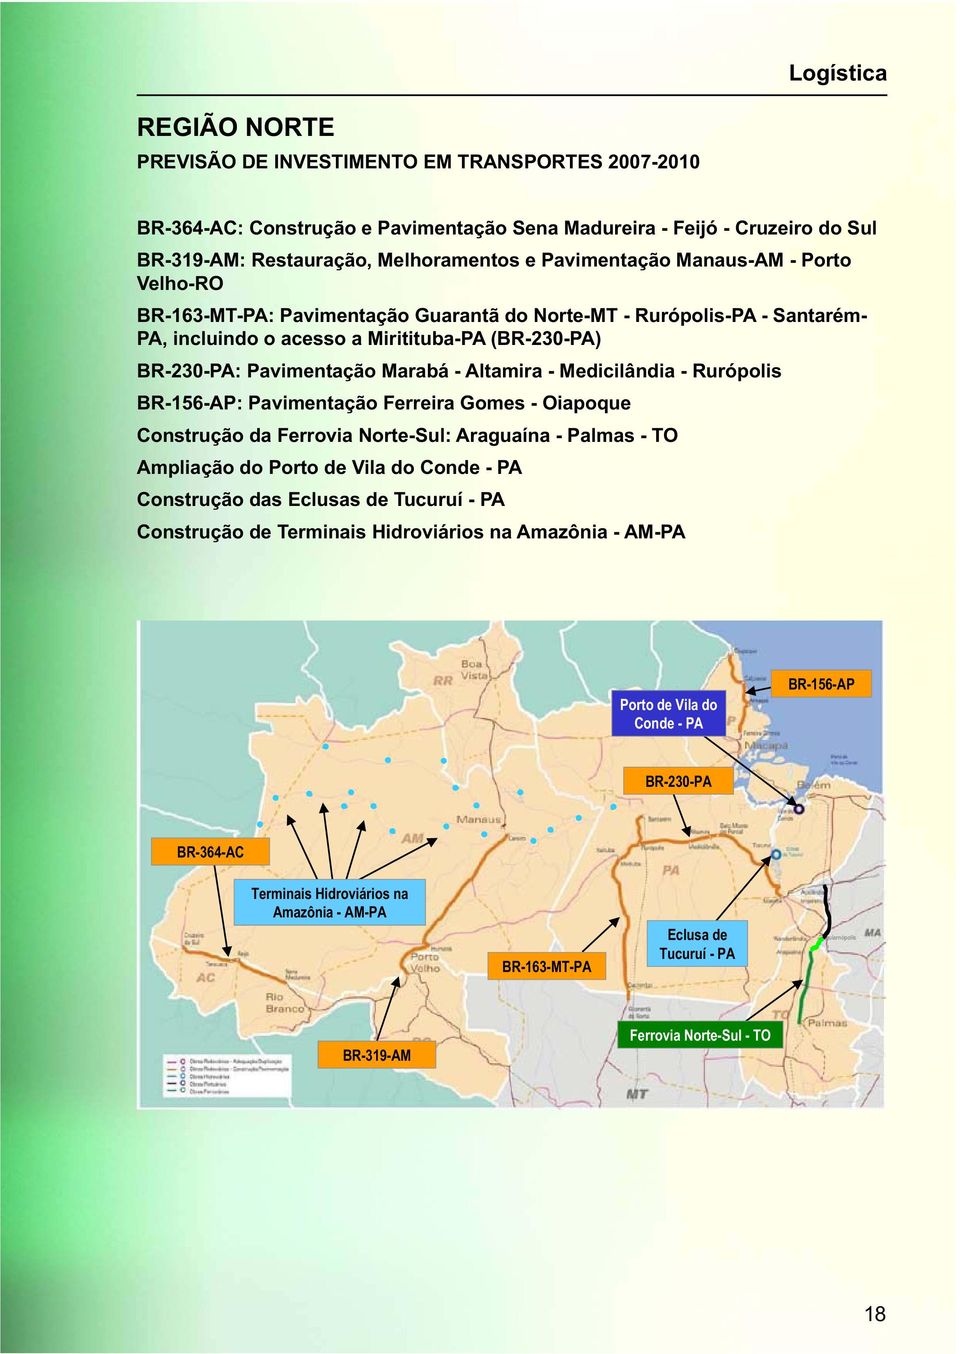 Ferreira Gomes - Oiapoque Construção da Ferrovia Norte-Sul: Araguaína - Palmas - TO Ampliação do Porto de Vila do Conde - PA Construção das Eclusas de Tucuruí - PA Construção de Terminais